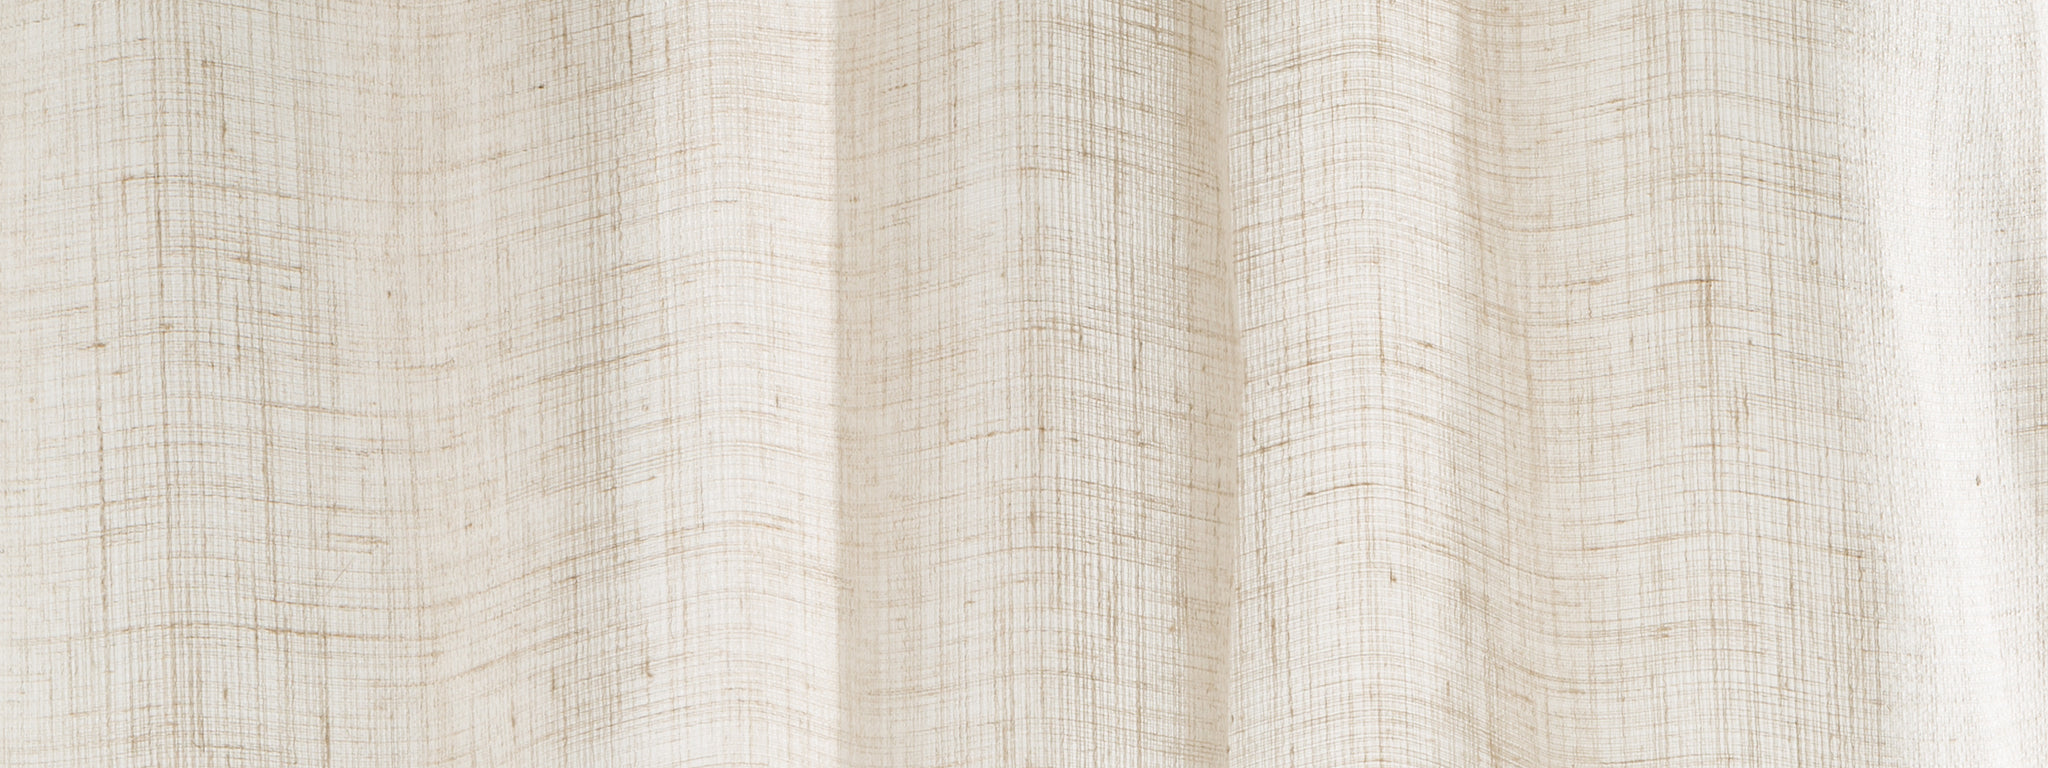 Marled Leno | Driftwood